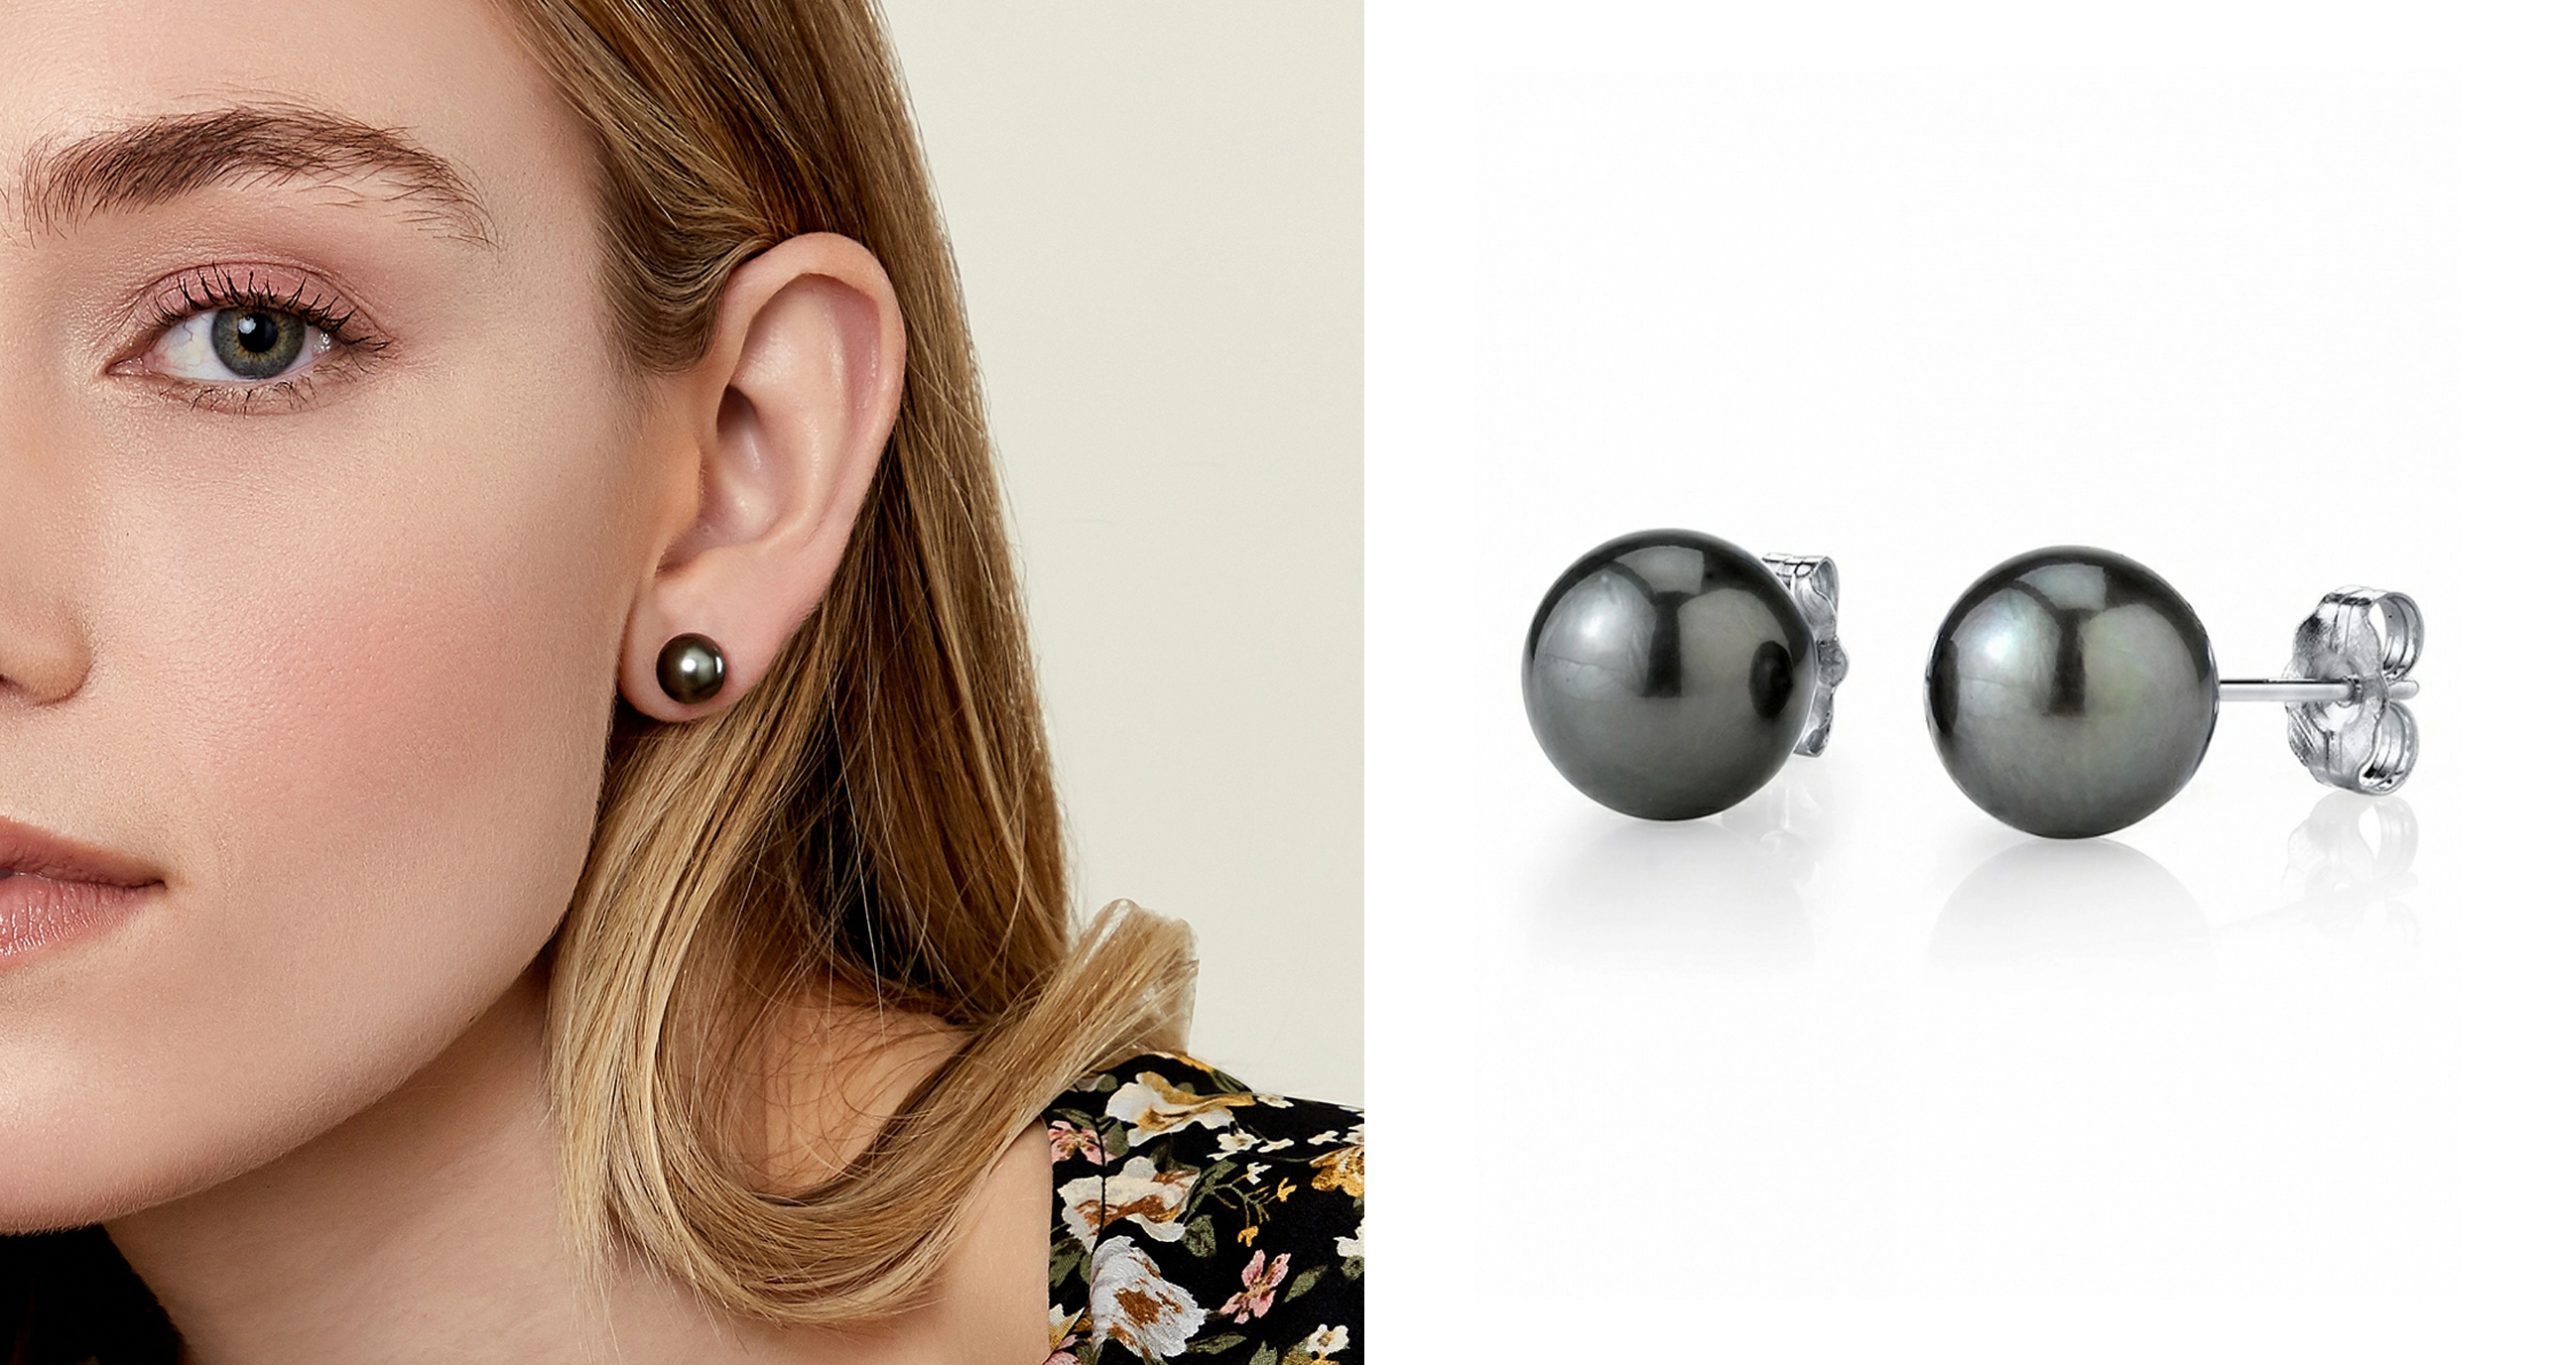 Buy DOUBLE Piercing, MULTIPLE Piercing, Double Stud Earring, Two Hole  Earring, Gold Arch Stud, Double Lobe Earring, Minimalist Earring, Unisex  Online in India - Etsy